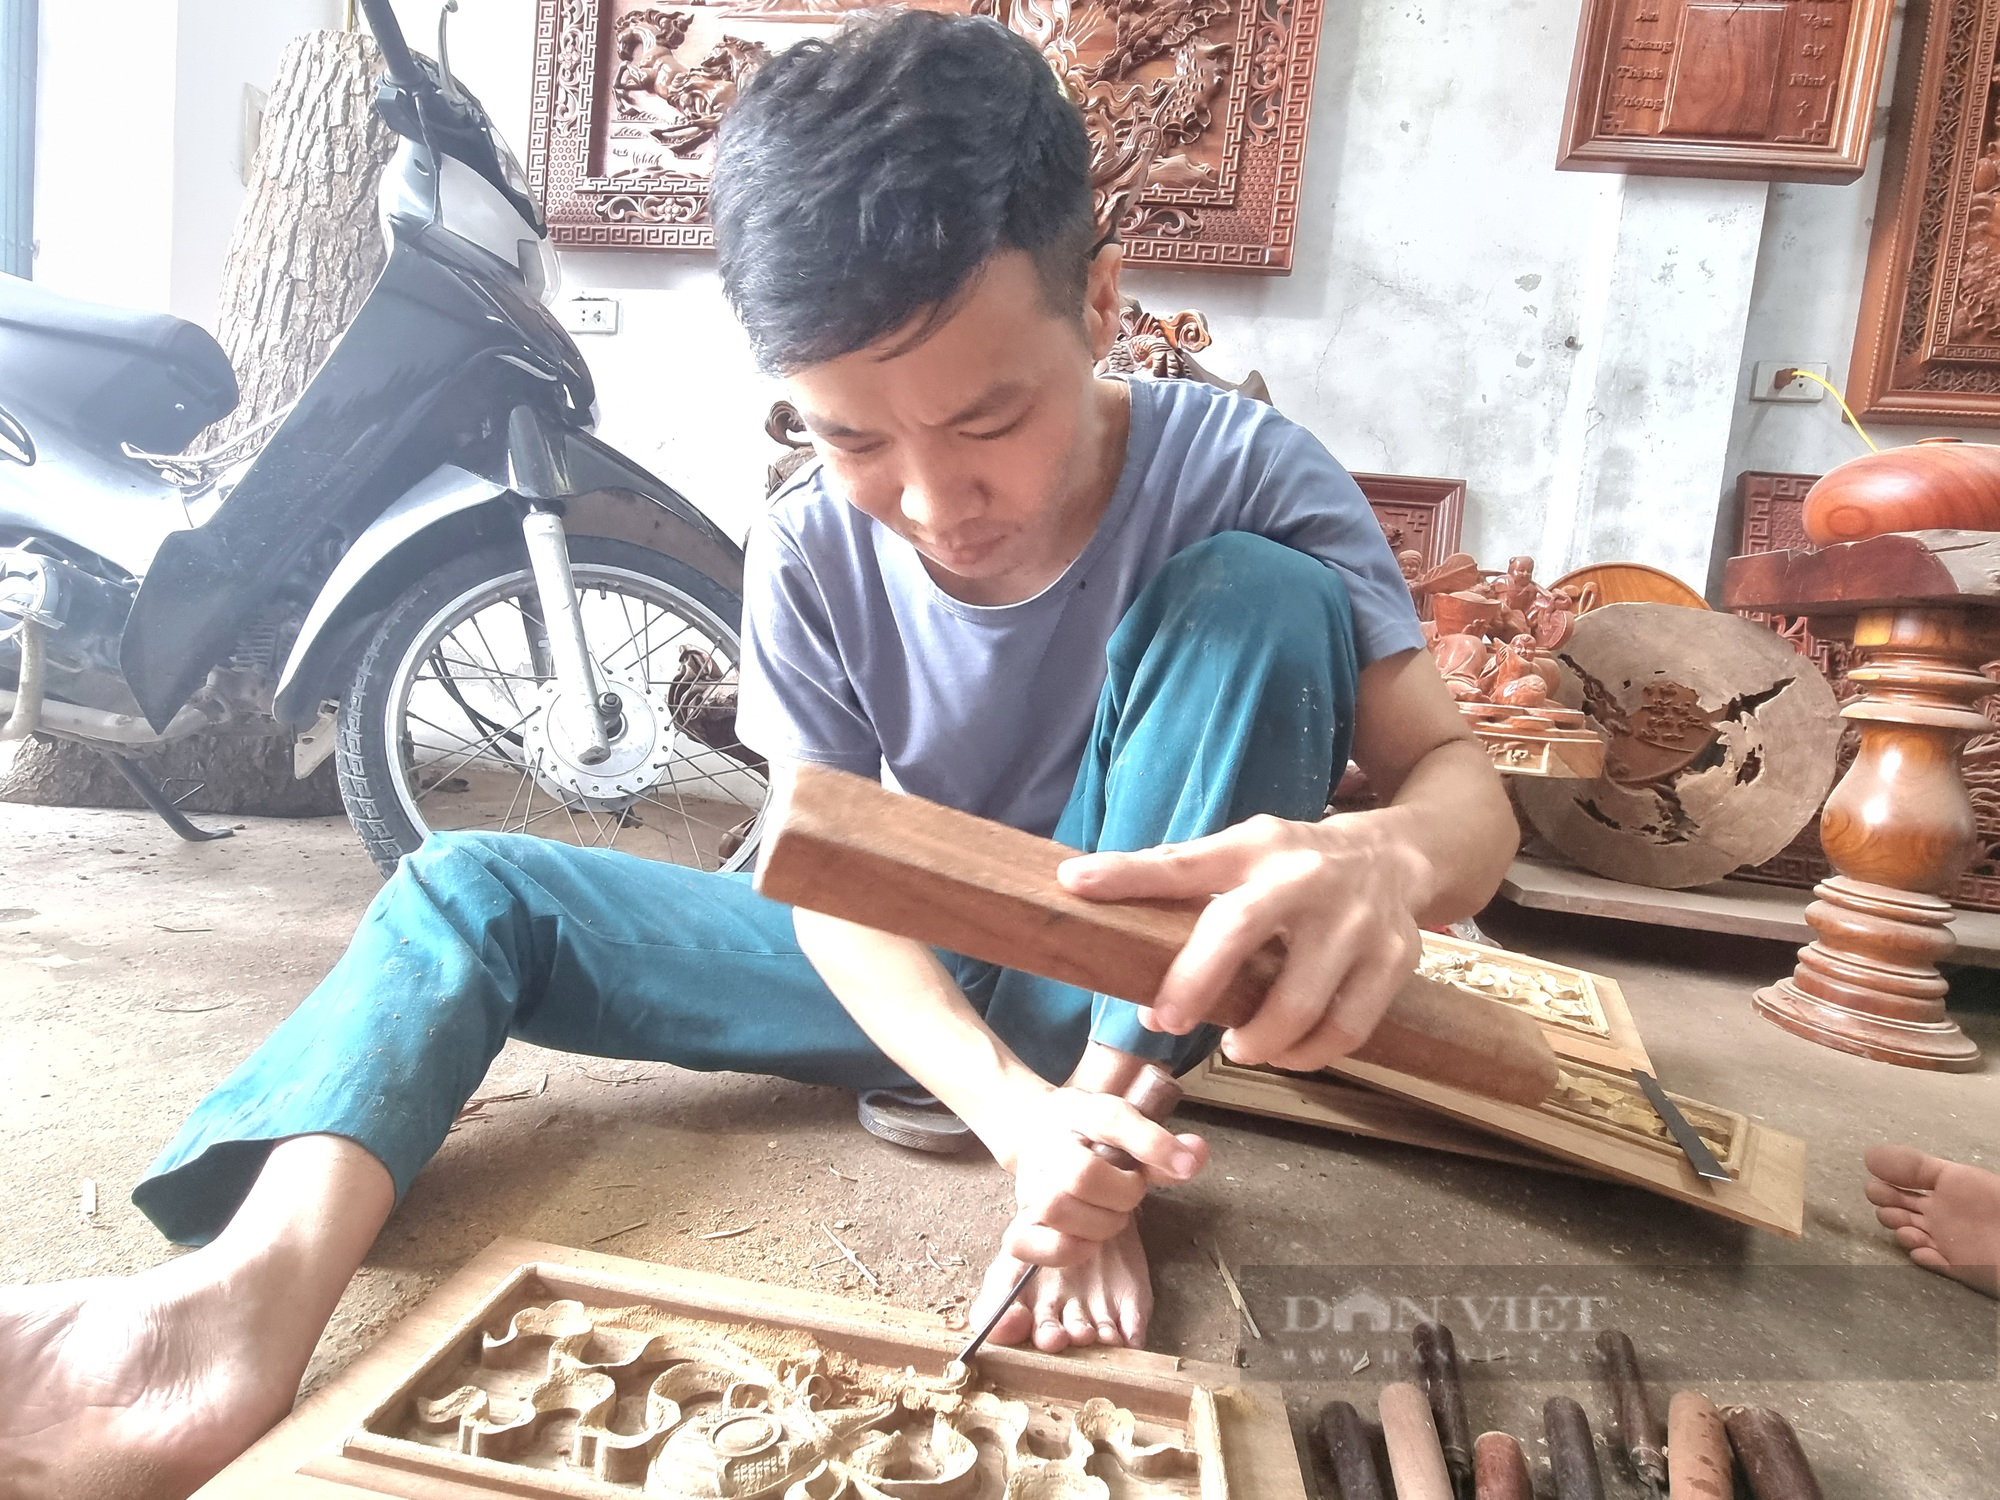 9X Ninh Bình nổi tiếng với nghề điêu khắc gỗ - Ảnh 2.